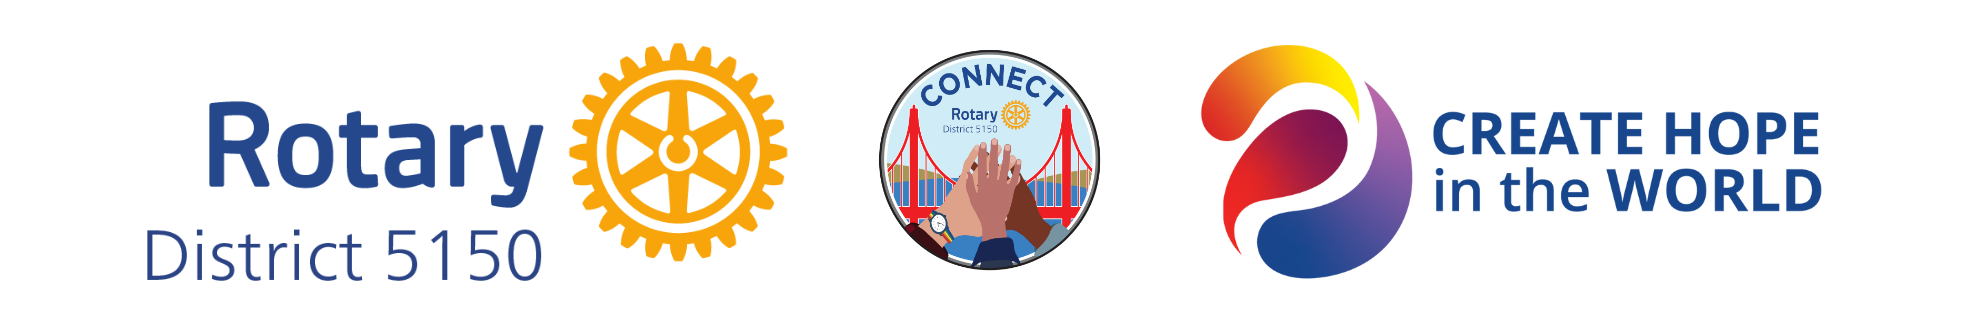 Rotary logo, District logo, presidential theme logo